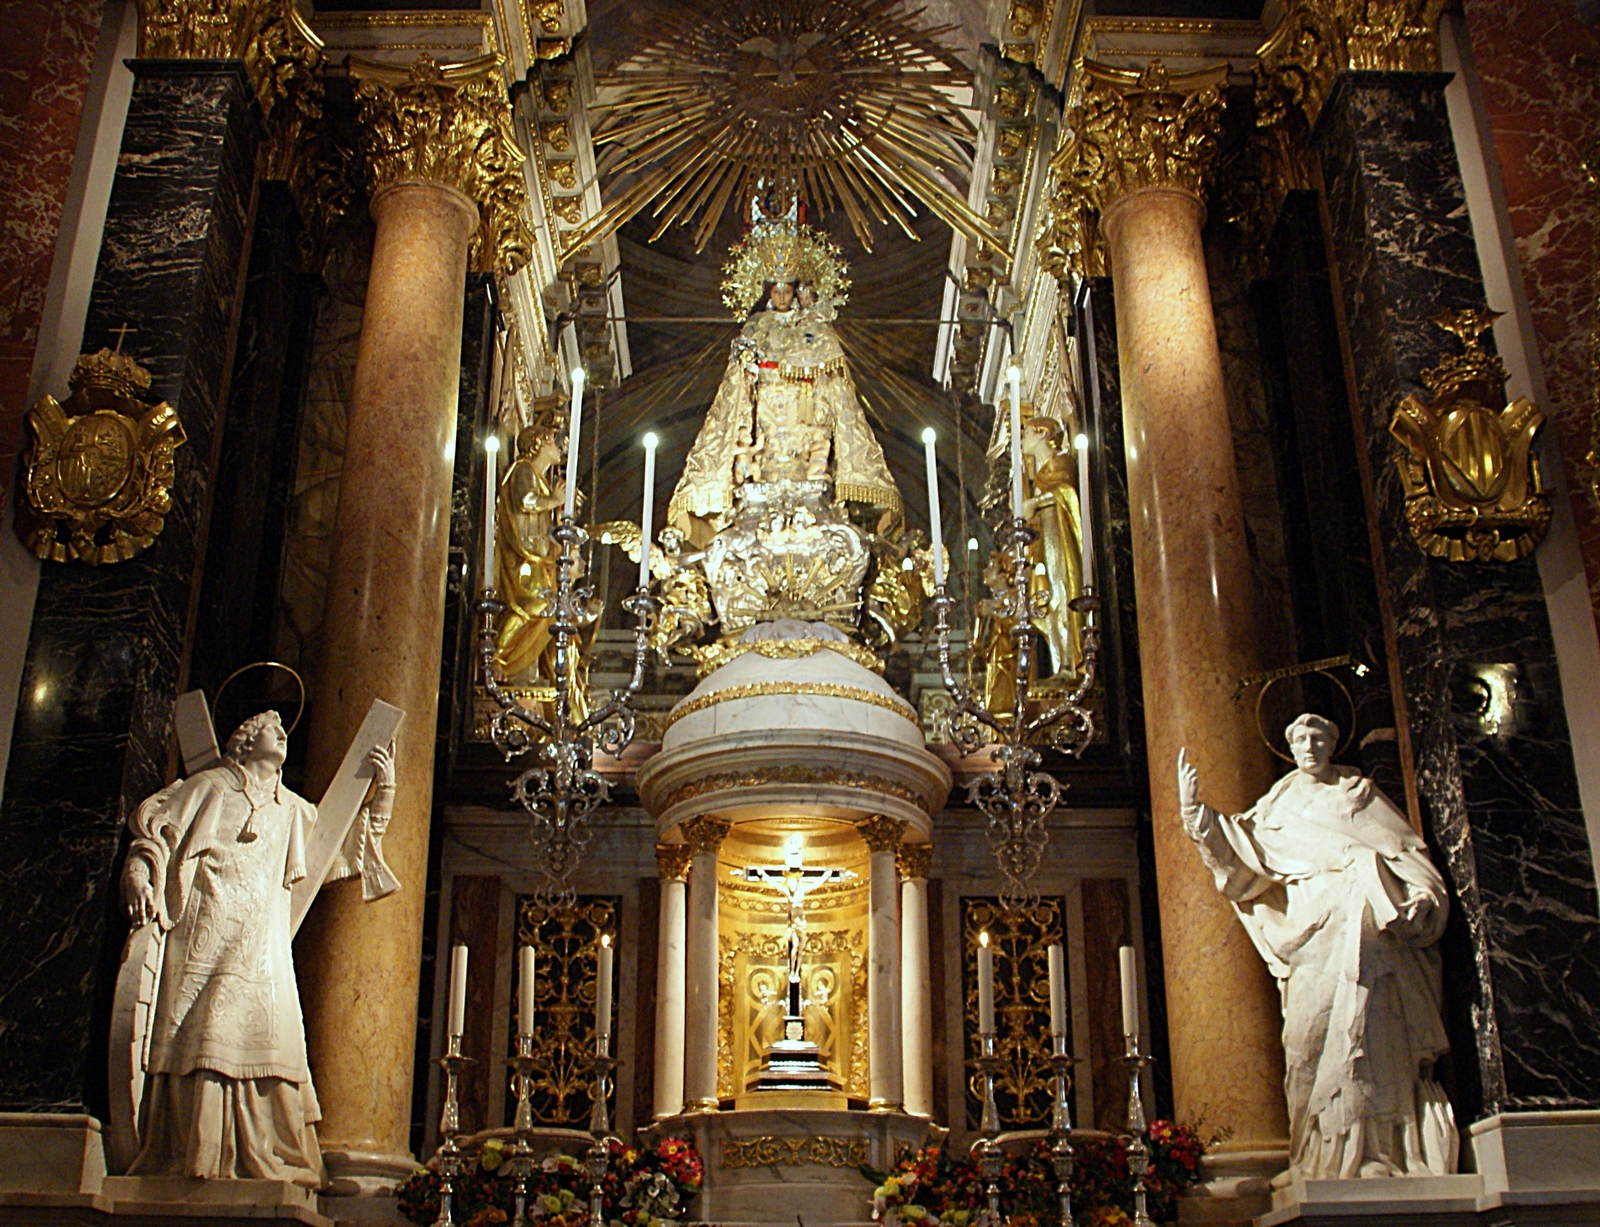 Nuestra Señora de los Desamparados, 3 Peregrinos Incógnitos Tallaron la Imagen, España (8 may)